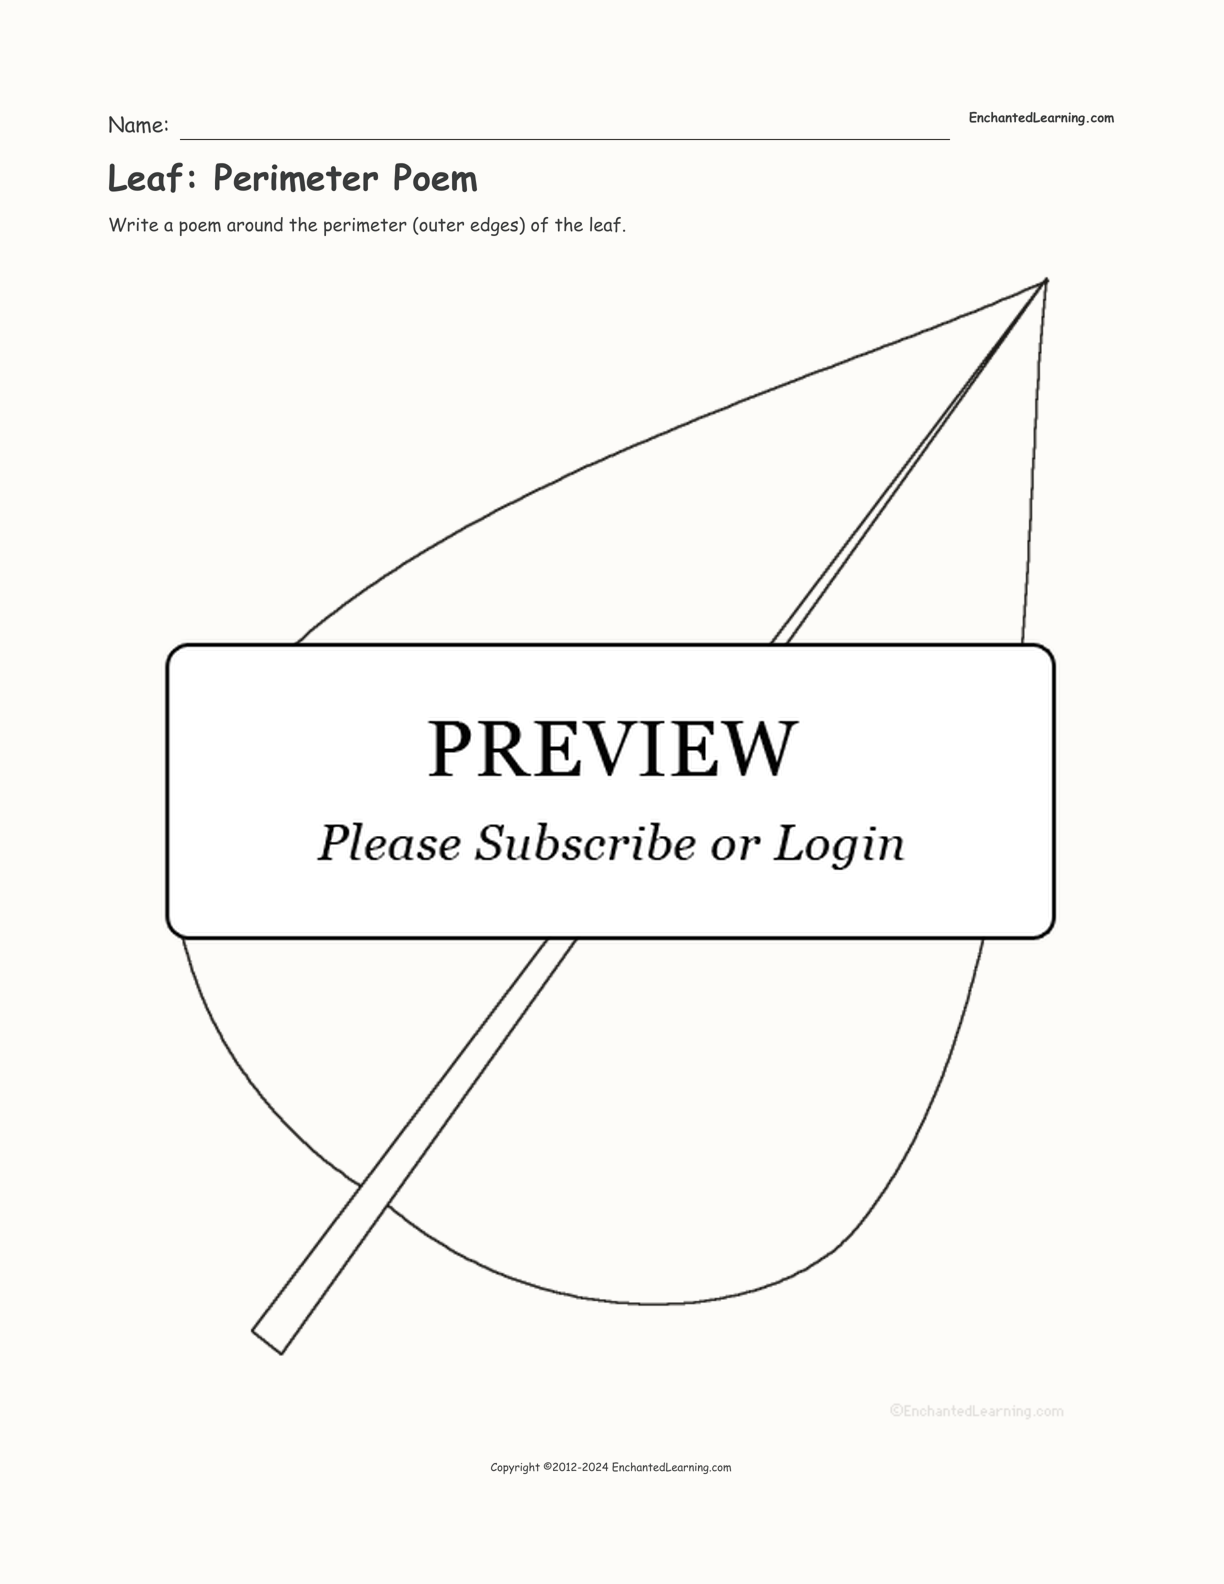 Leaf: Perimeter Poem interactive worksheet page 1